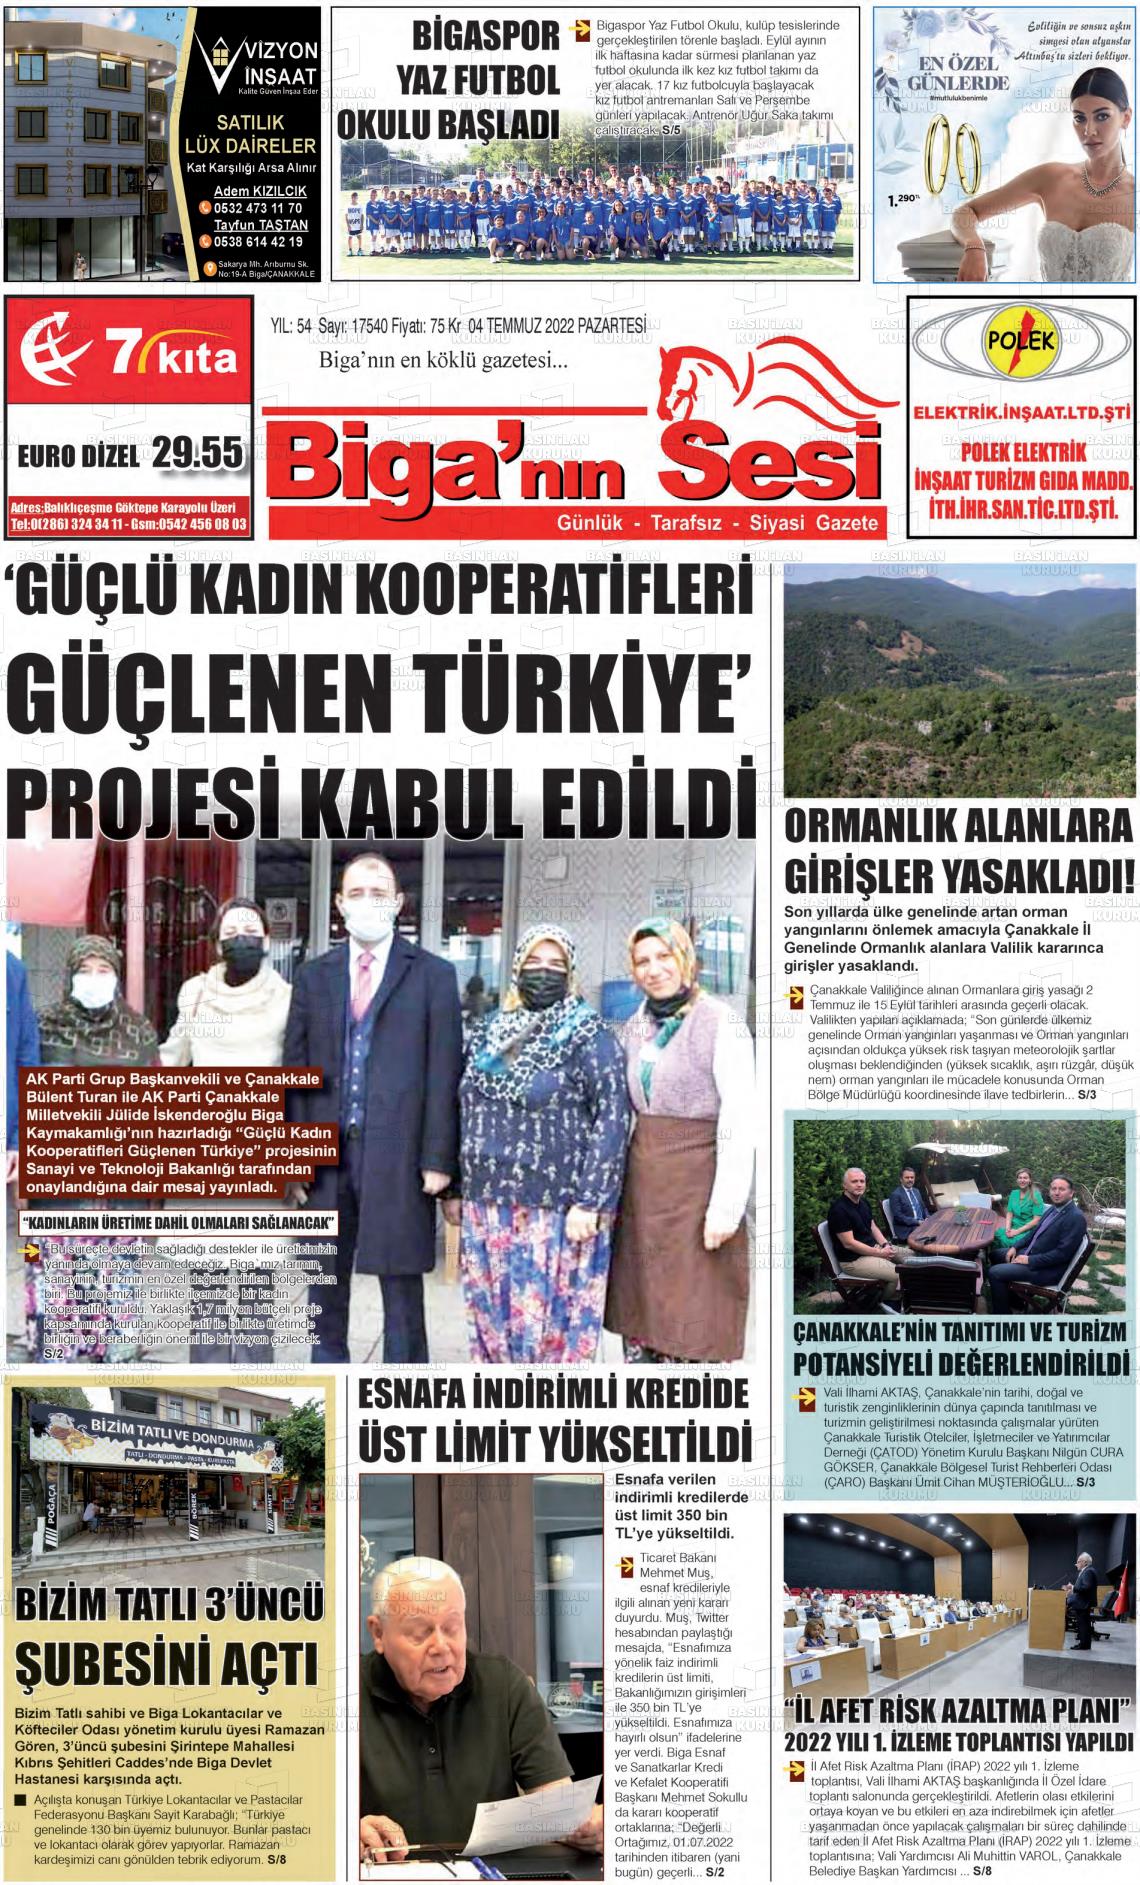 04 Temmuz 2022 Biga'nın Sesi Gazete Manşeti